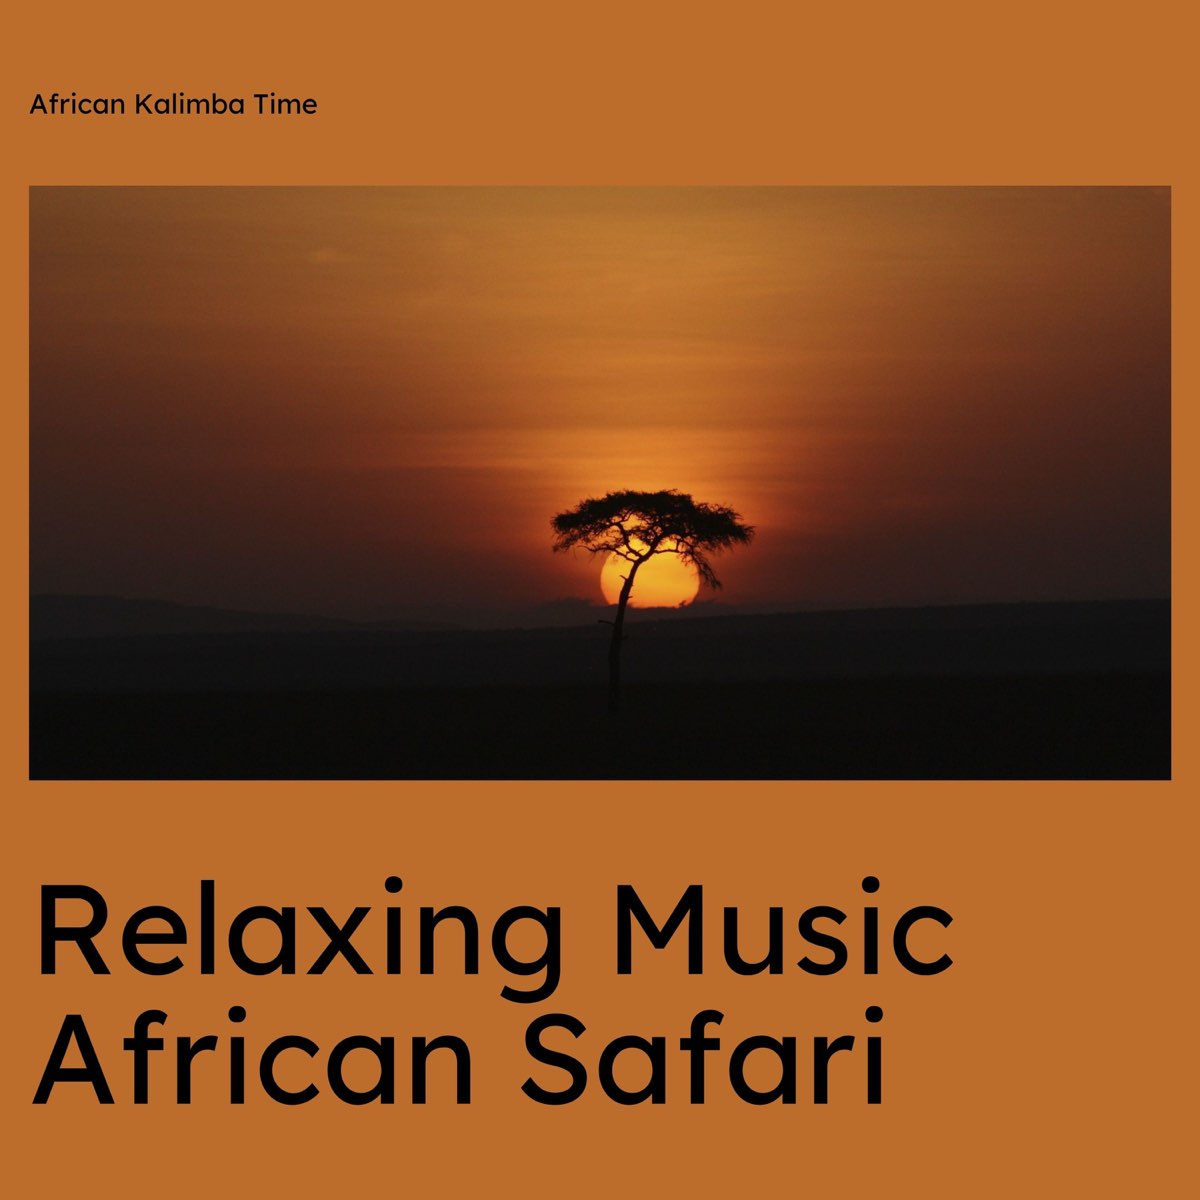 african safari relaxing music